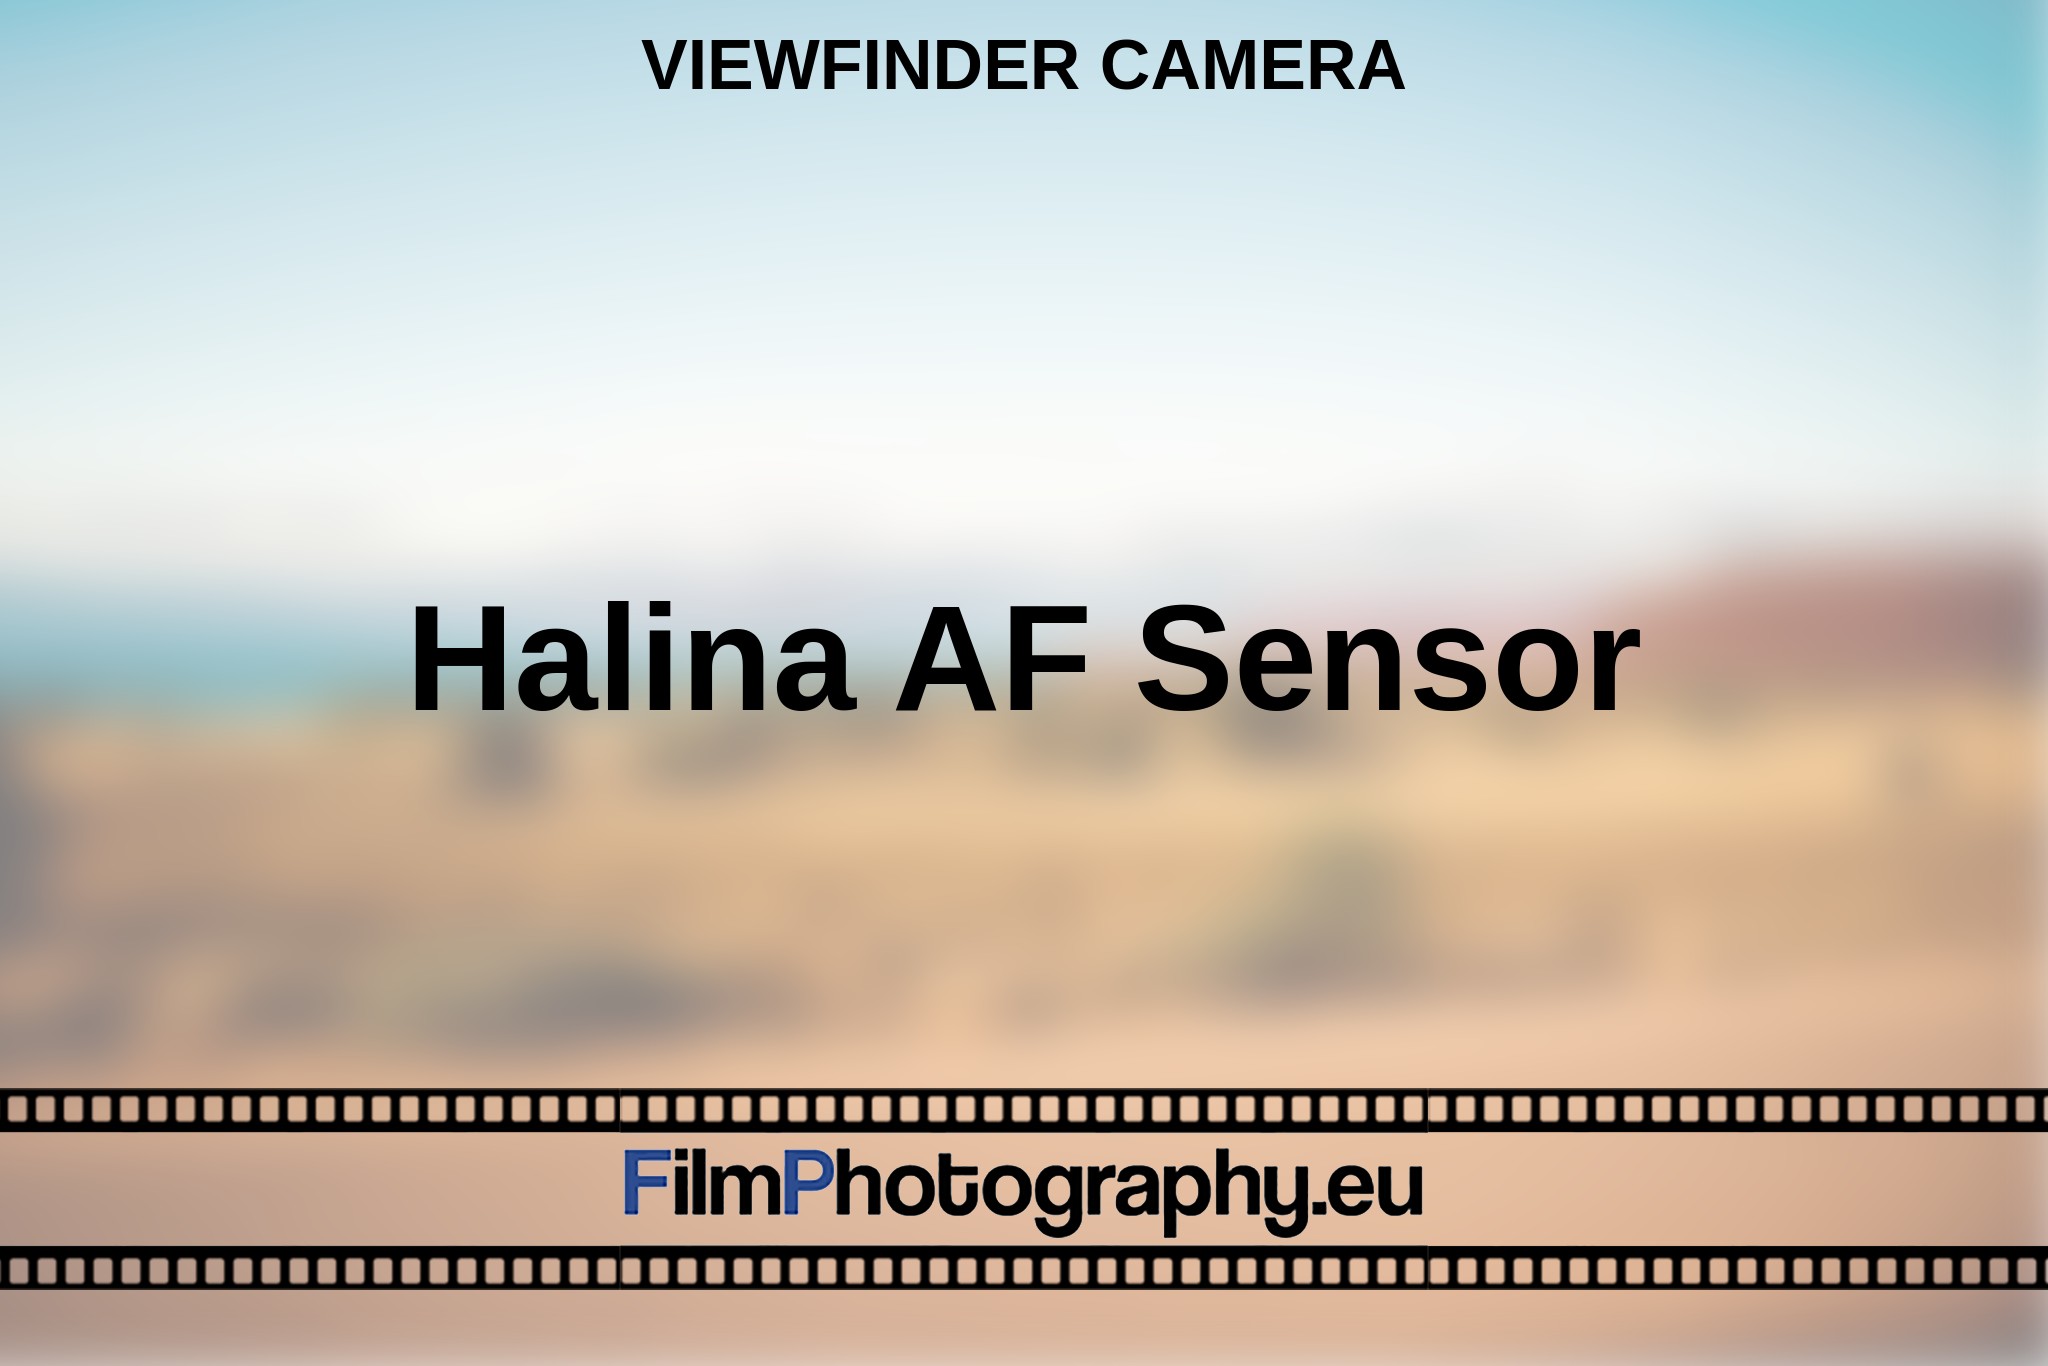 halina-af-sensor-viewfinder-camera-en-bnv.jpg